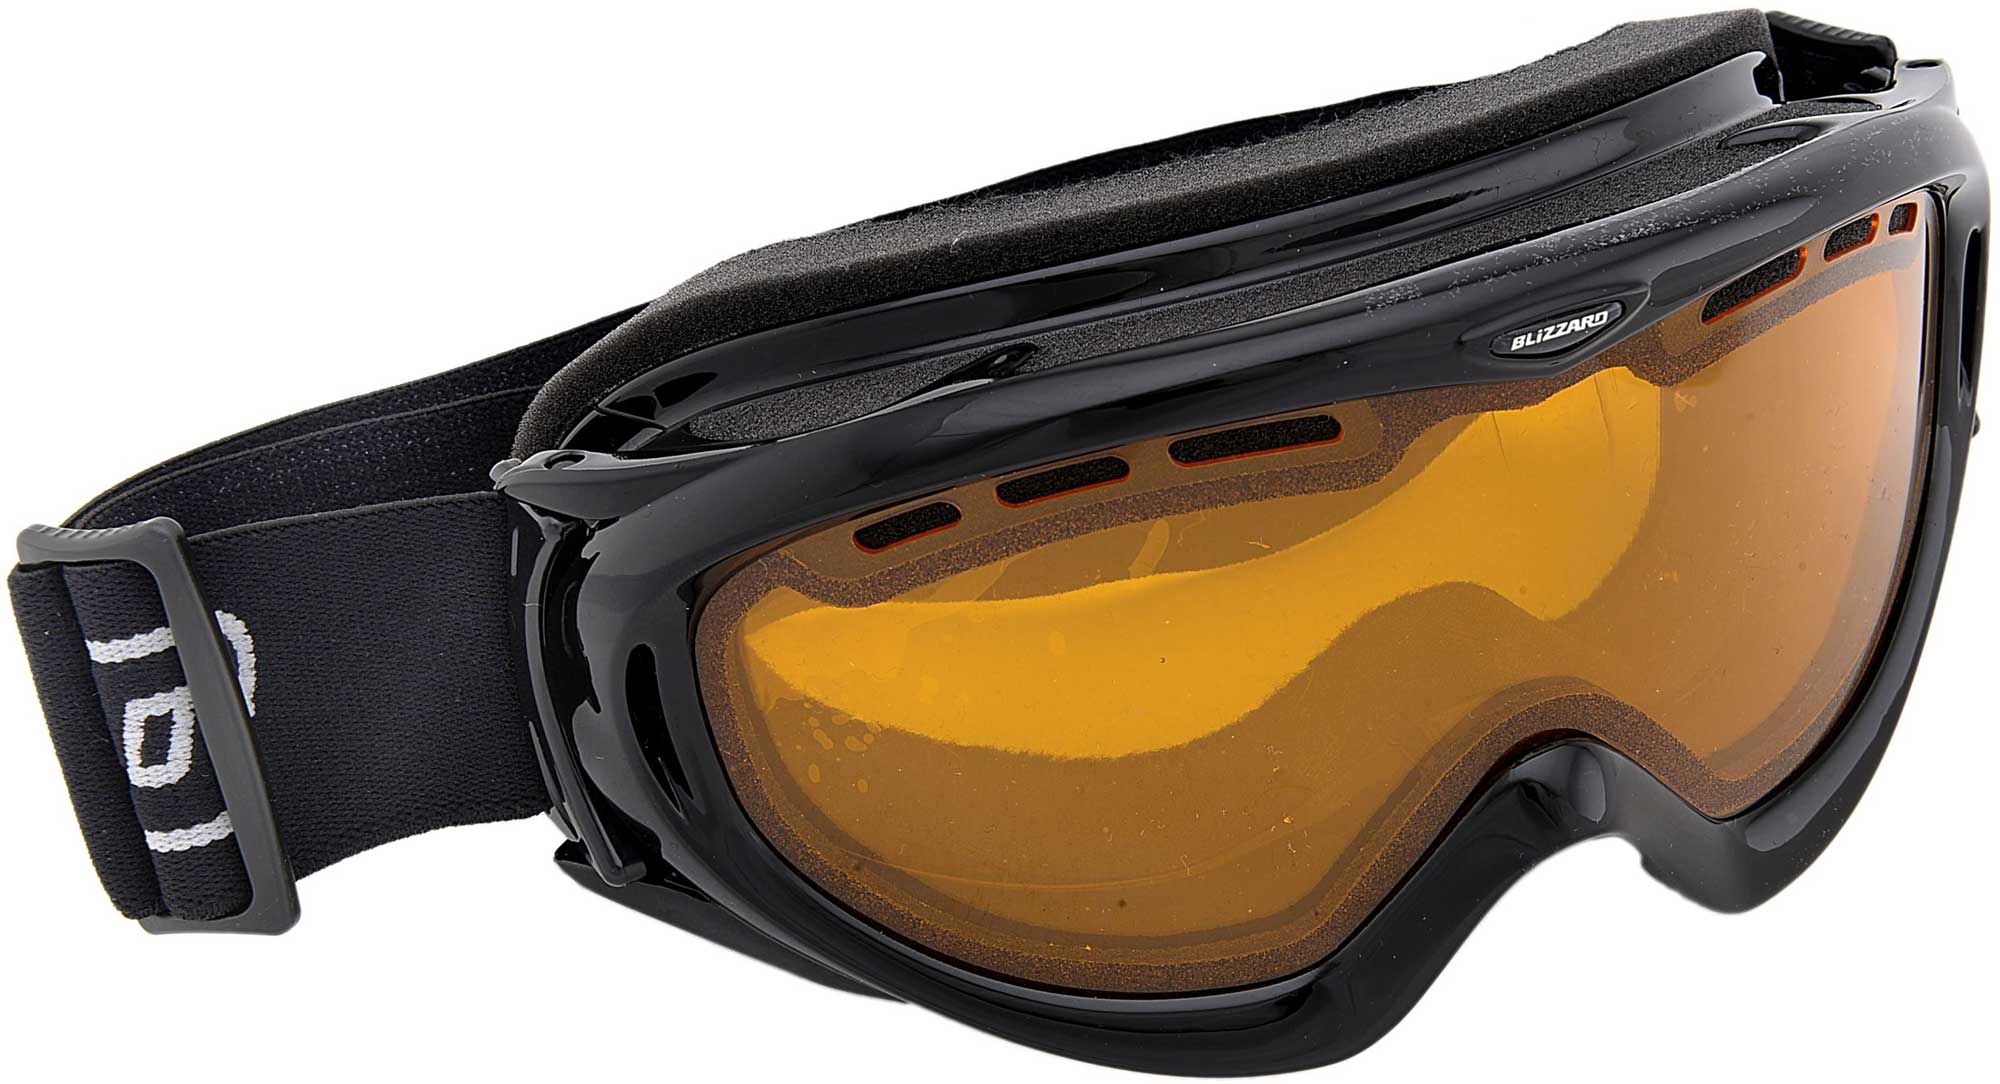 SKI GOGGLES 905 DAVO - Lyžiarske okuliare